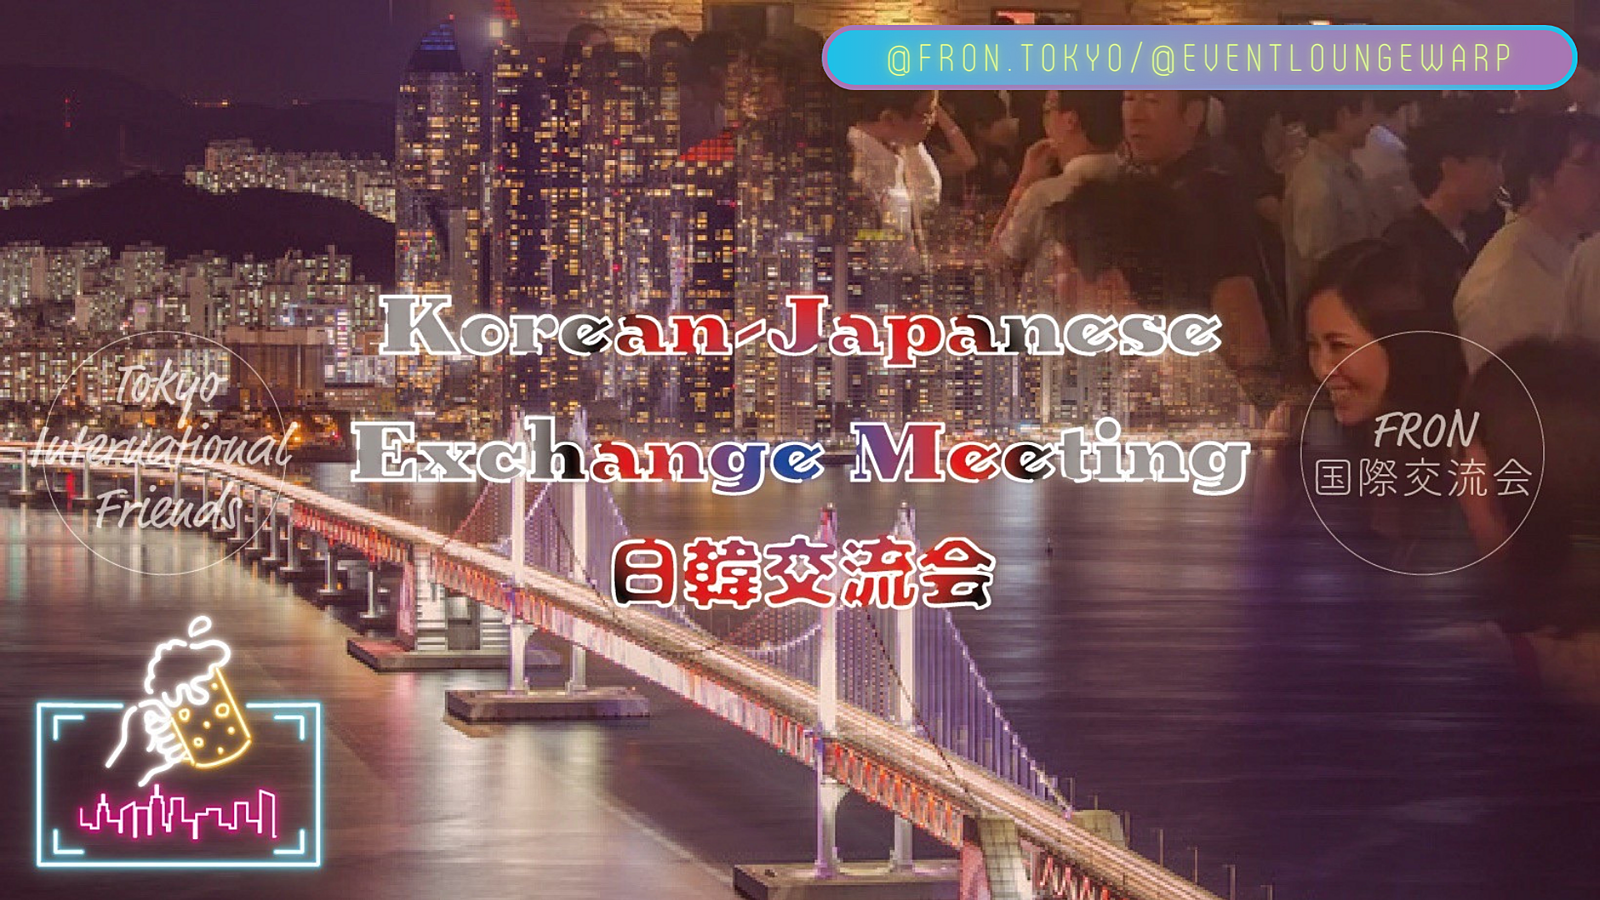 3/24(日)14:00~ 日韓交流会(한일 교류회) 🇰🇷 Korean-Japanese Exchange Meeting☆初心者歓迎♪